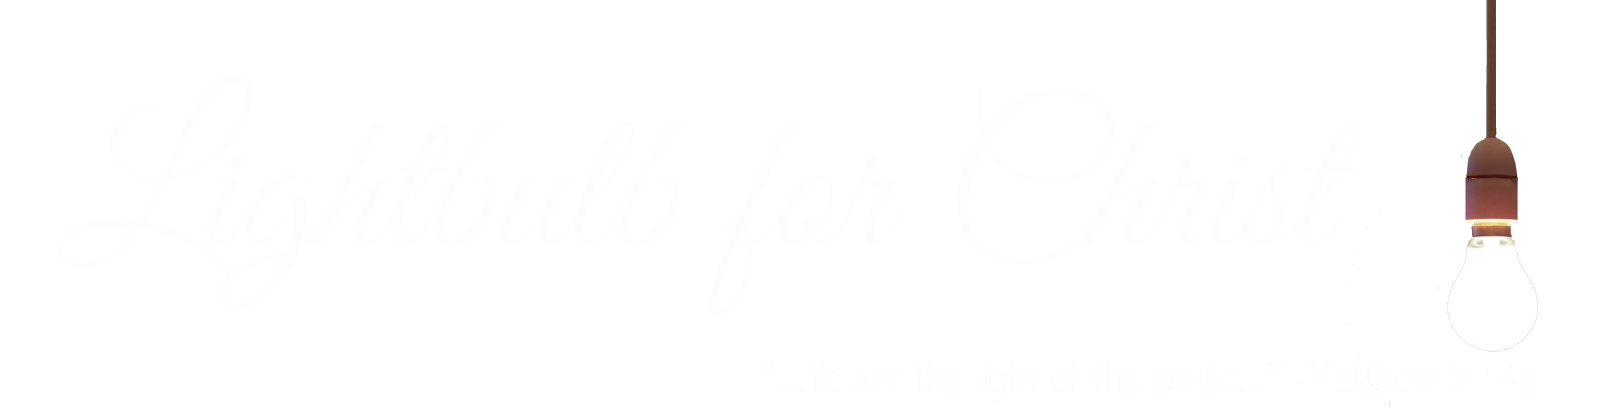 Lightbulb For Christ